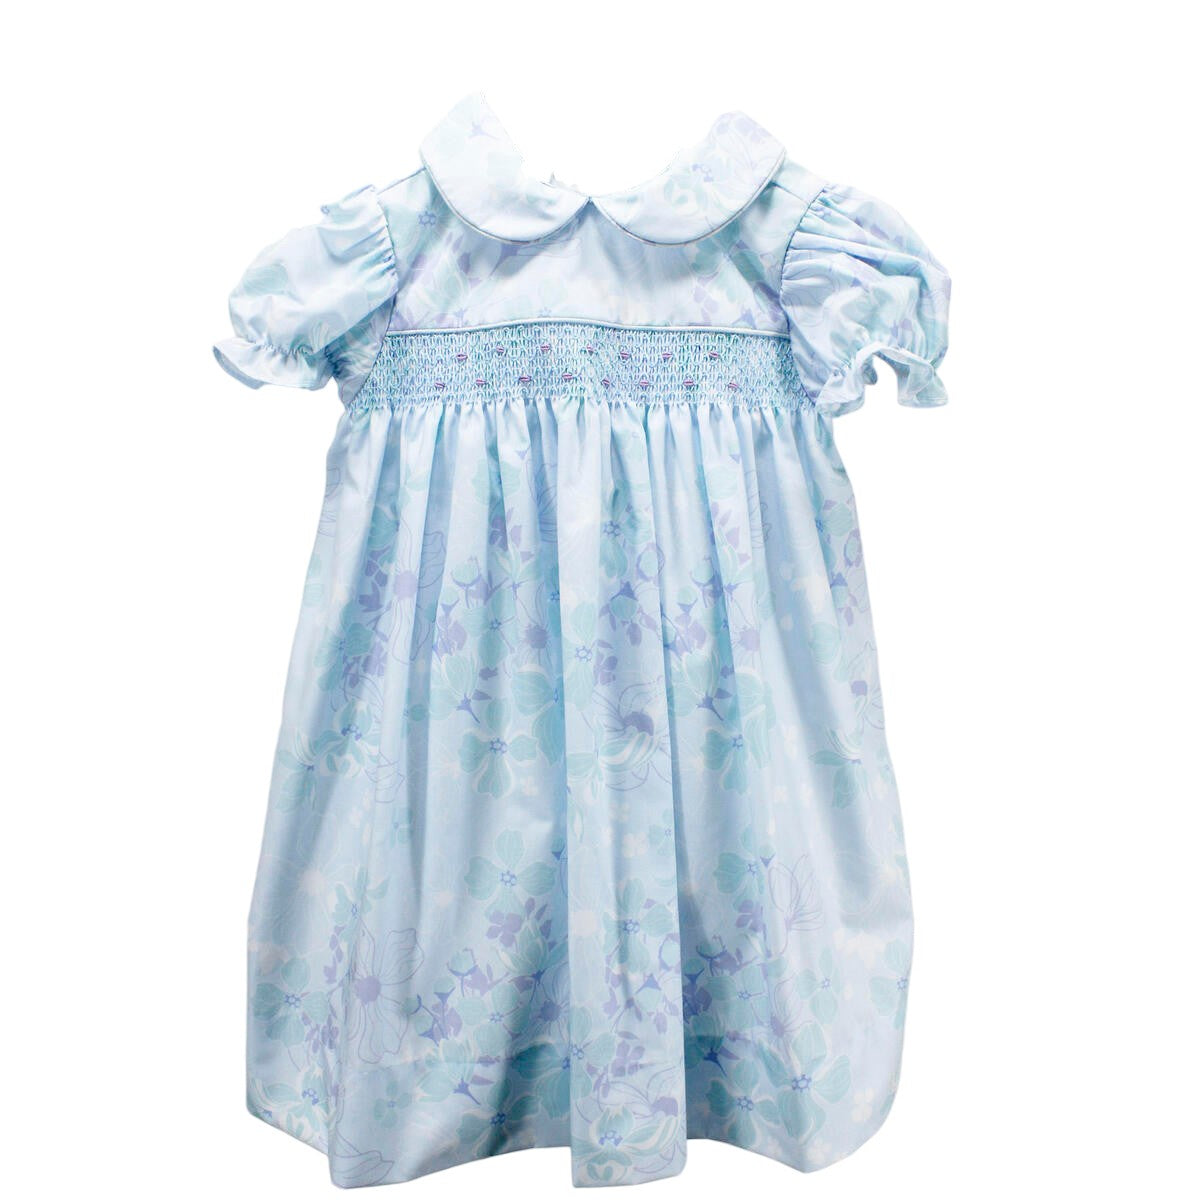 Charming Little One Beautiful Blue Garden Marie Dress GQ1304 5102